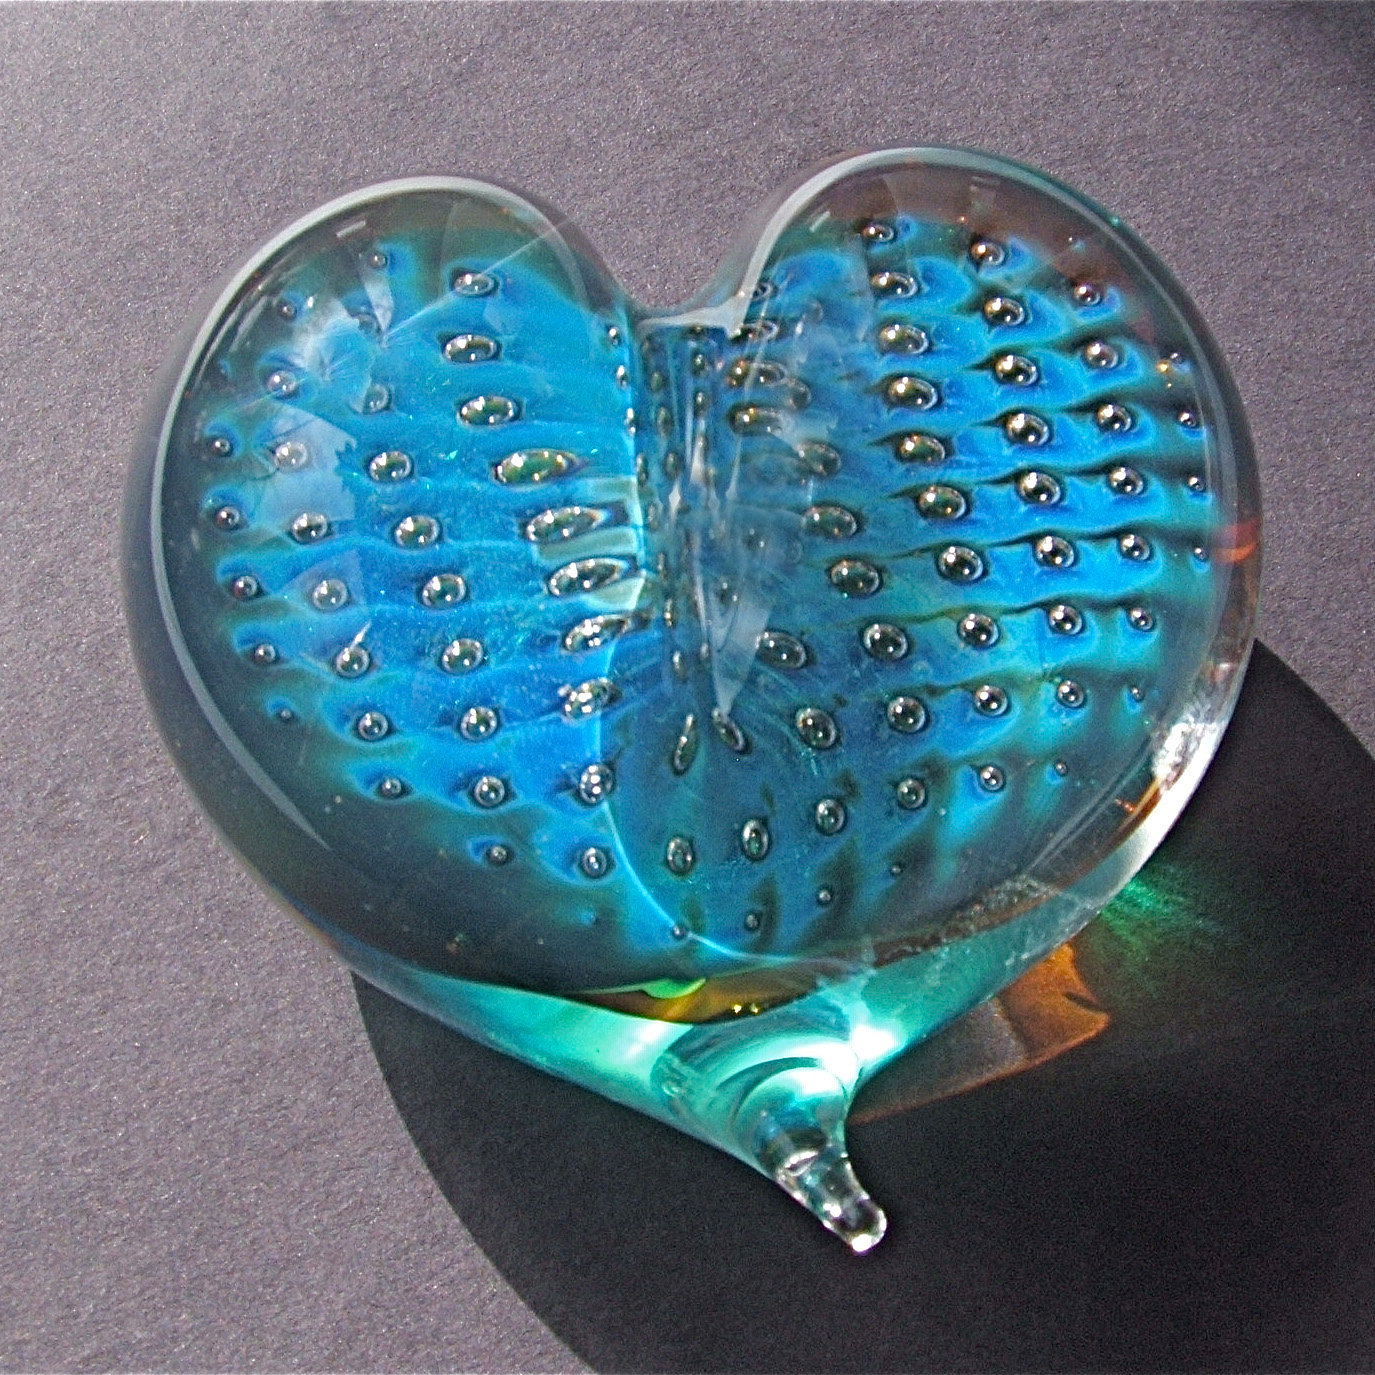 Starry Night Heart Paperweight By Robert Burch Art Glass Paperweight Artful Home